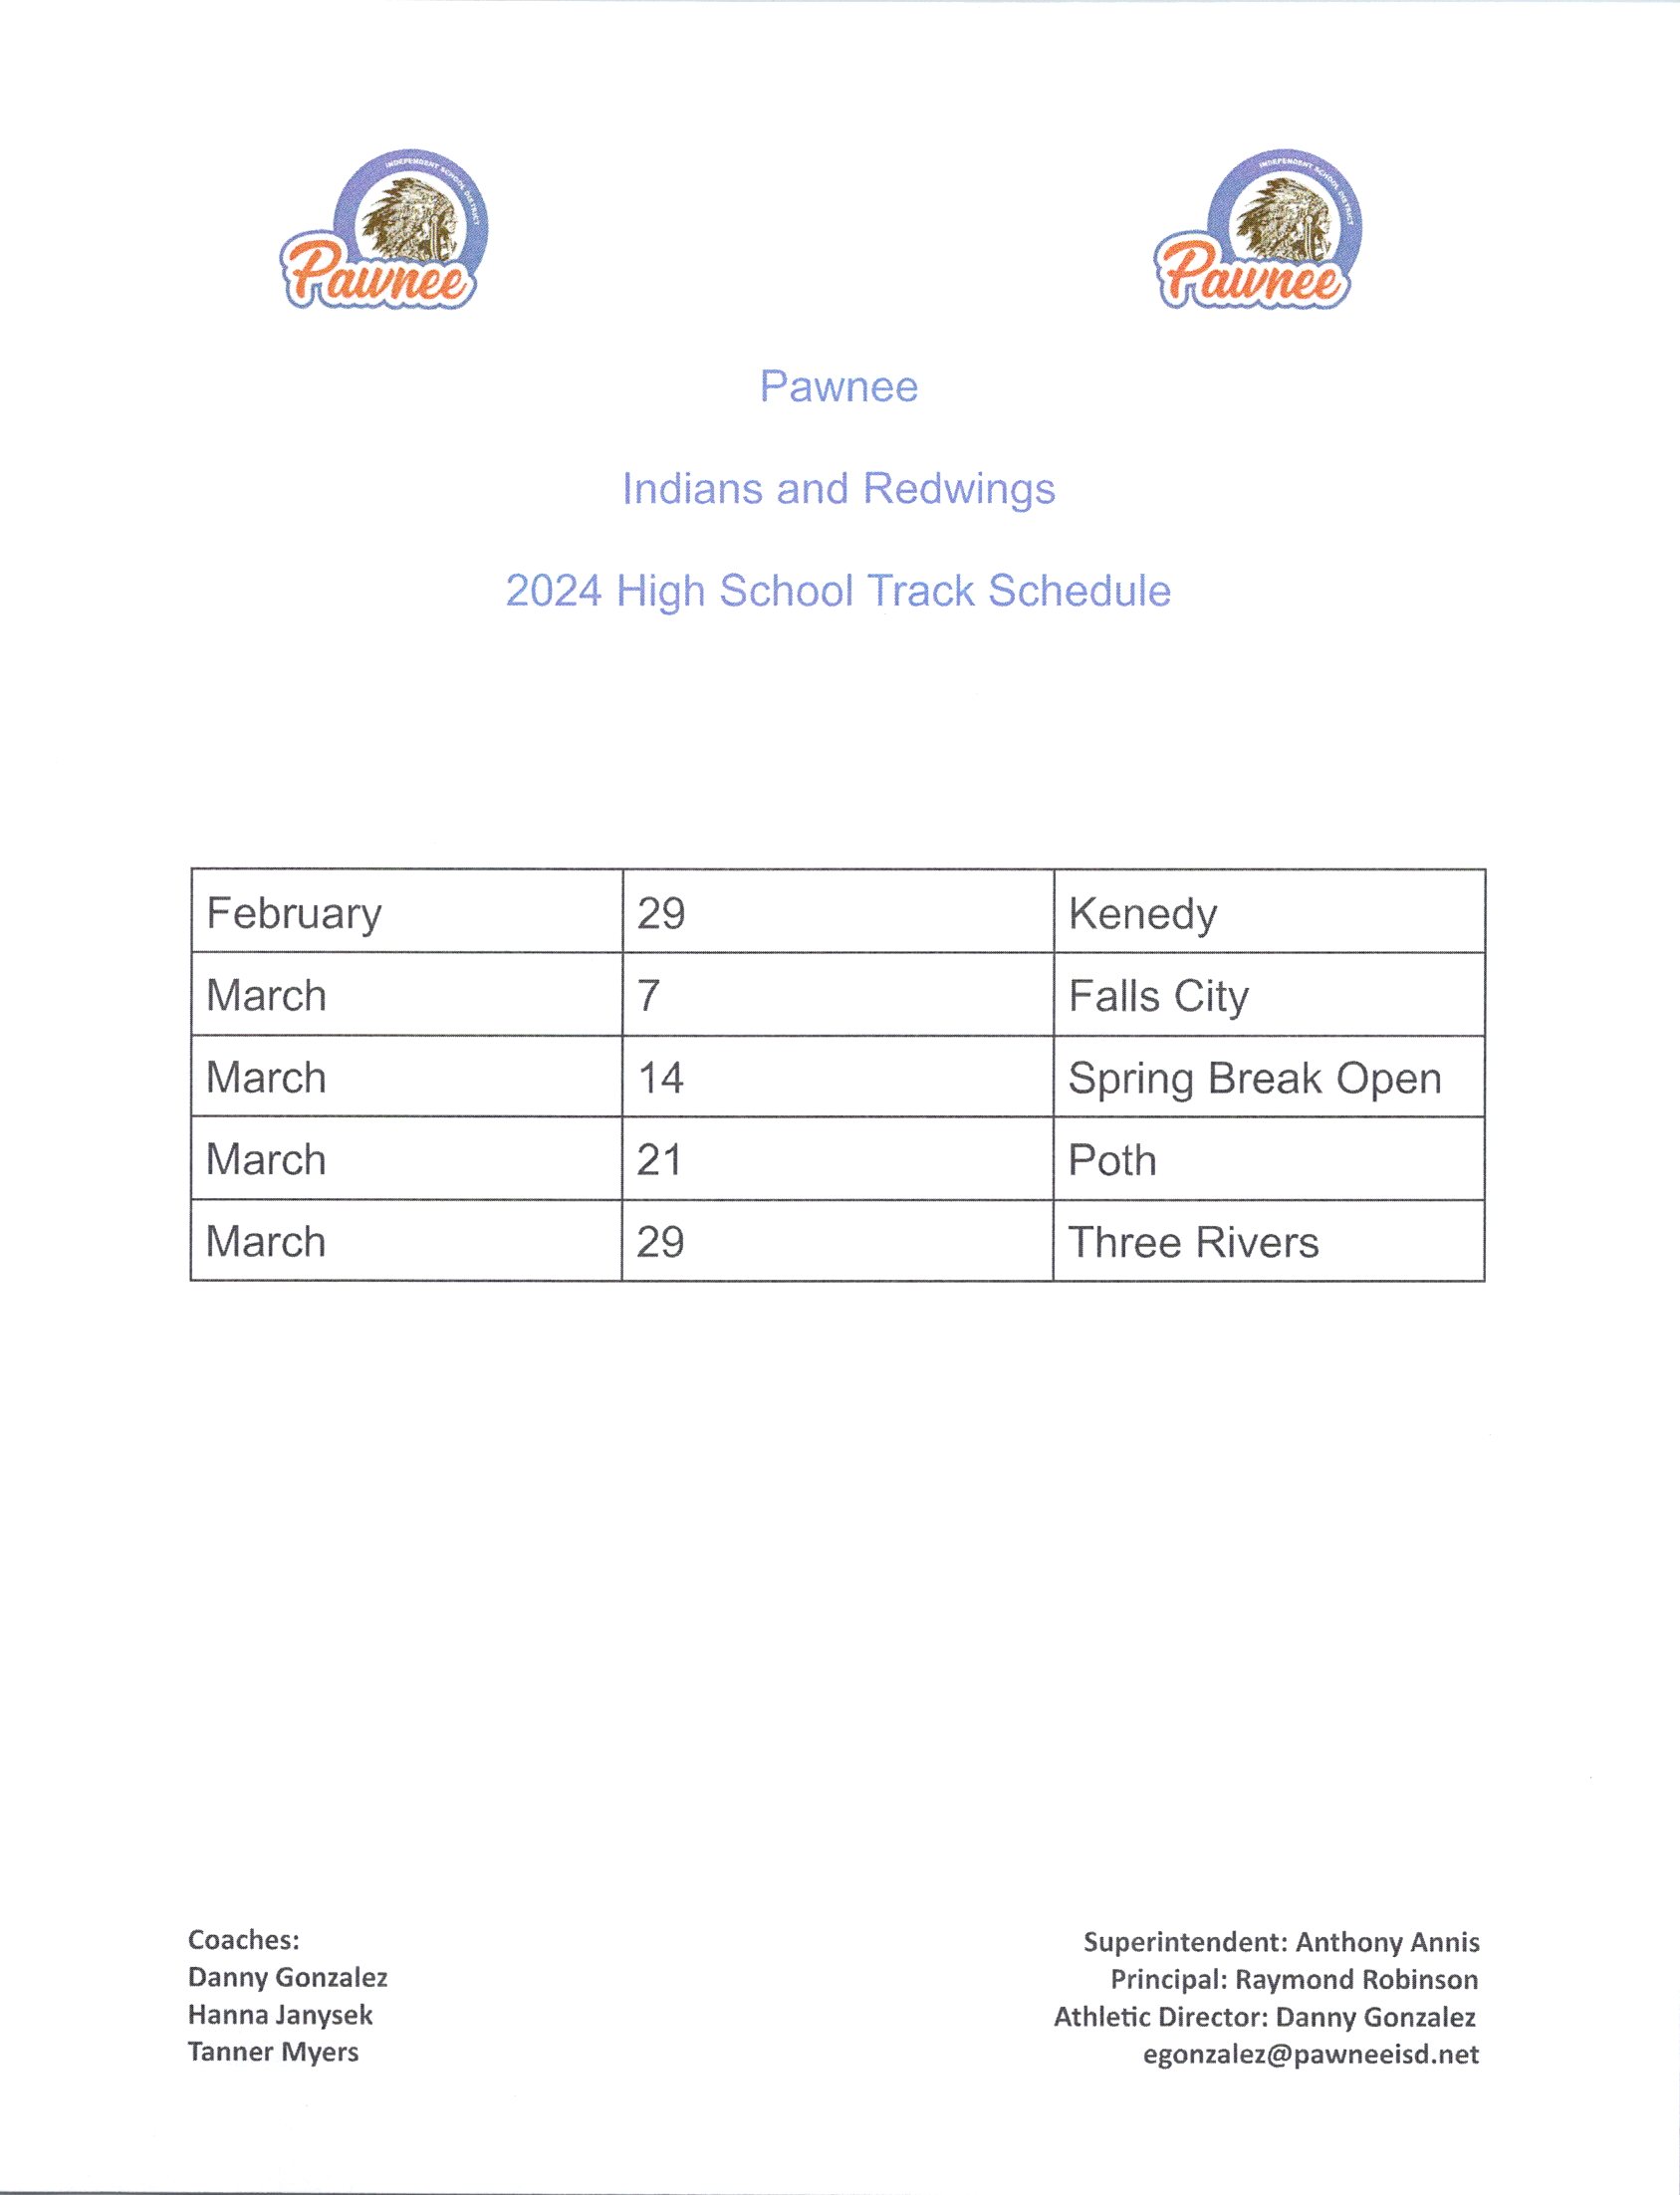 HS track schedule